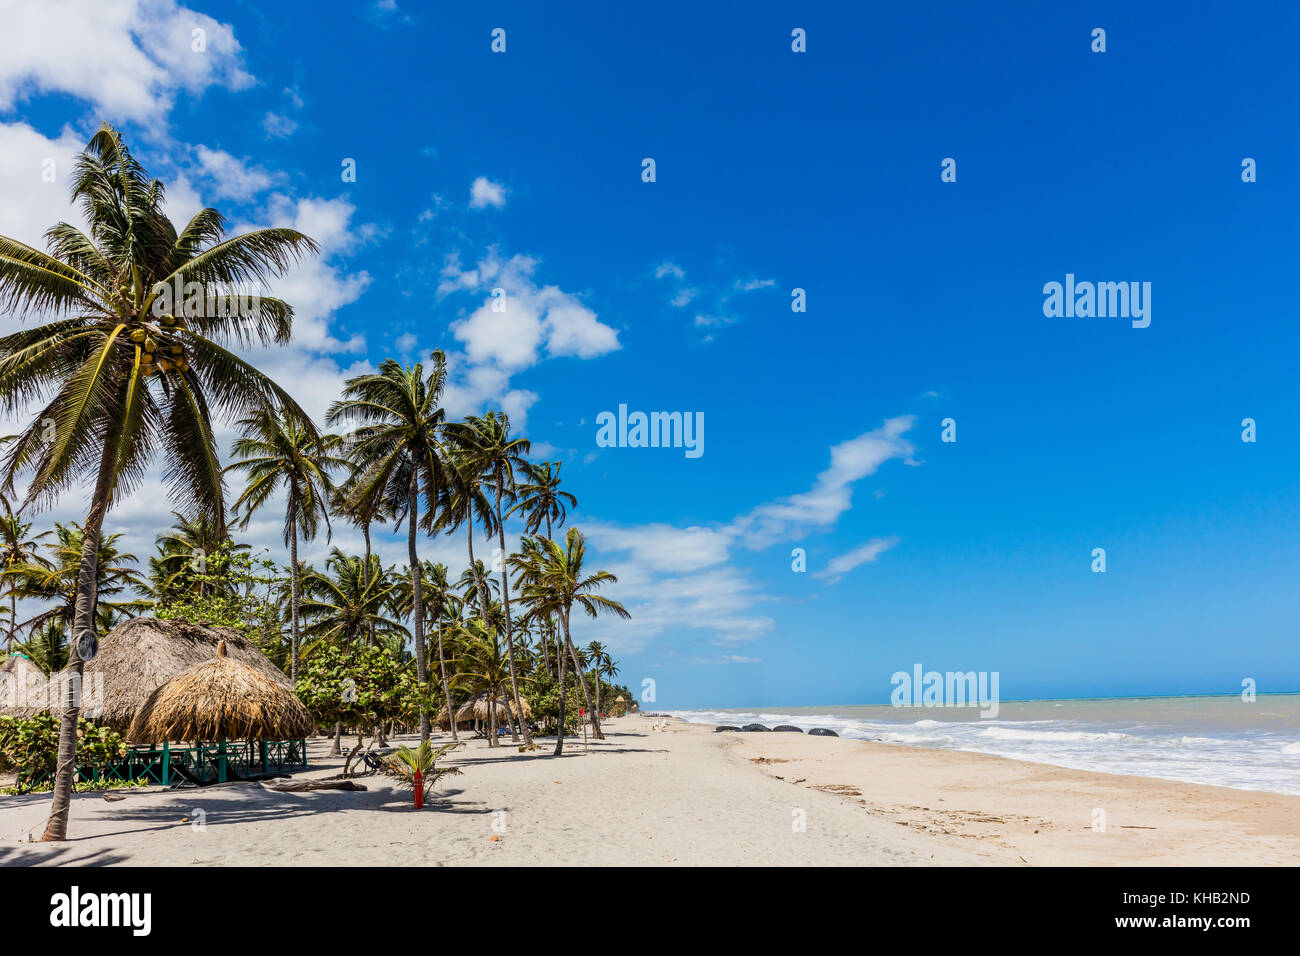 Palomino plage de La Guajira en Colombie Amérique du Sud Banque D'Images